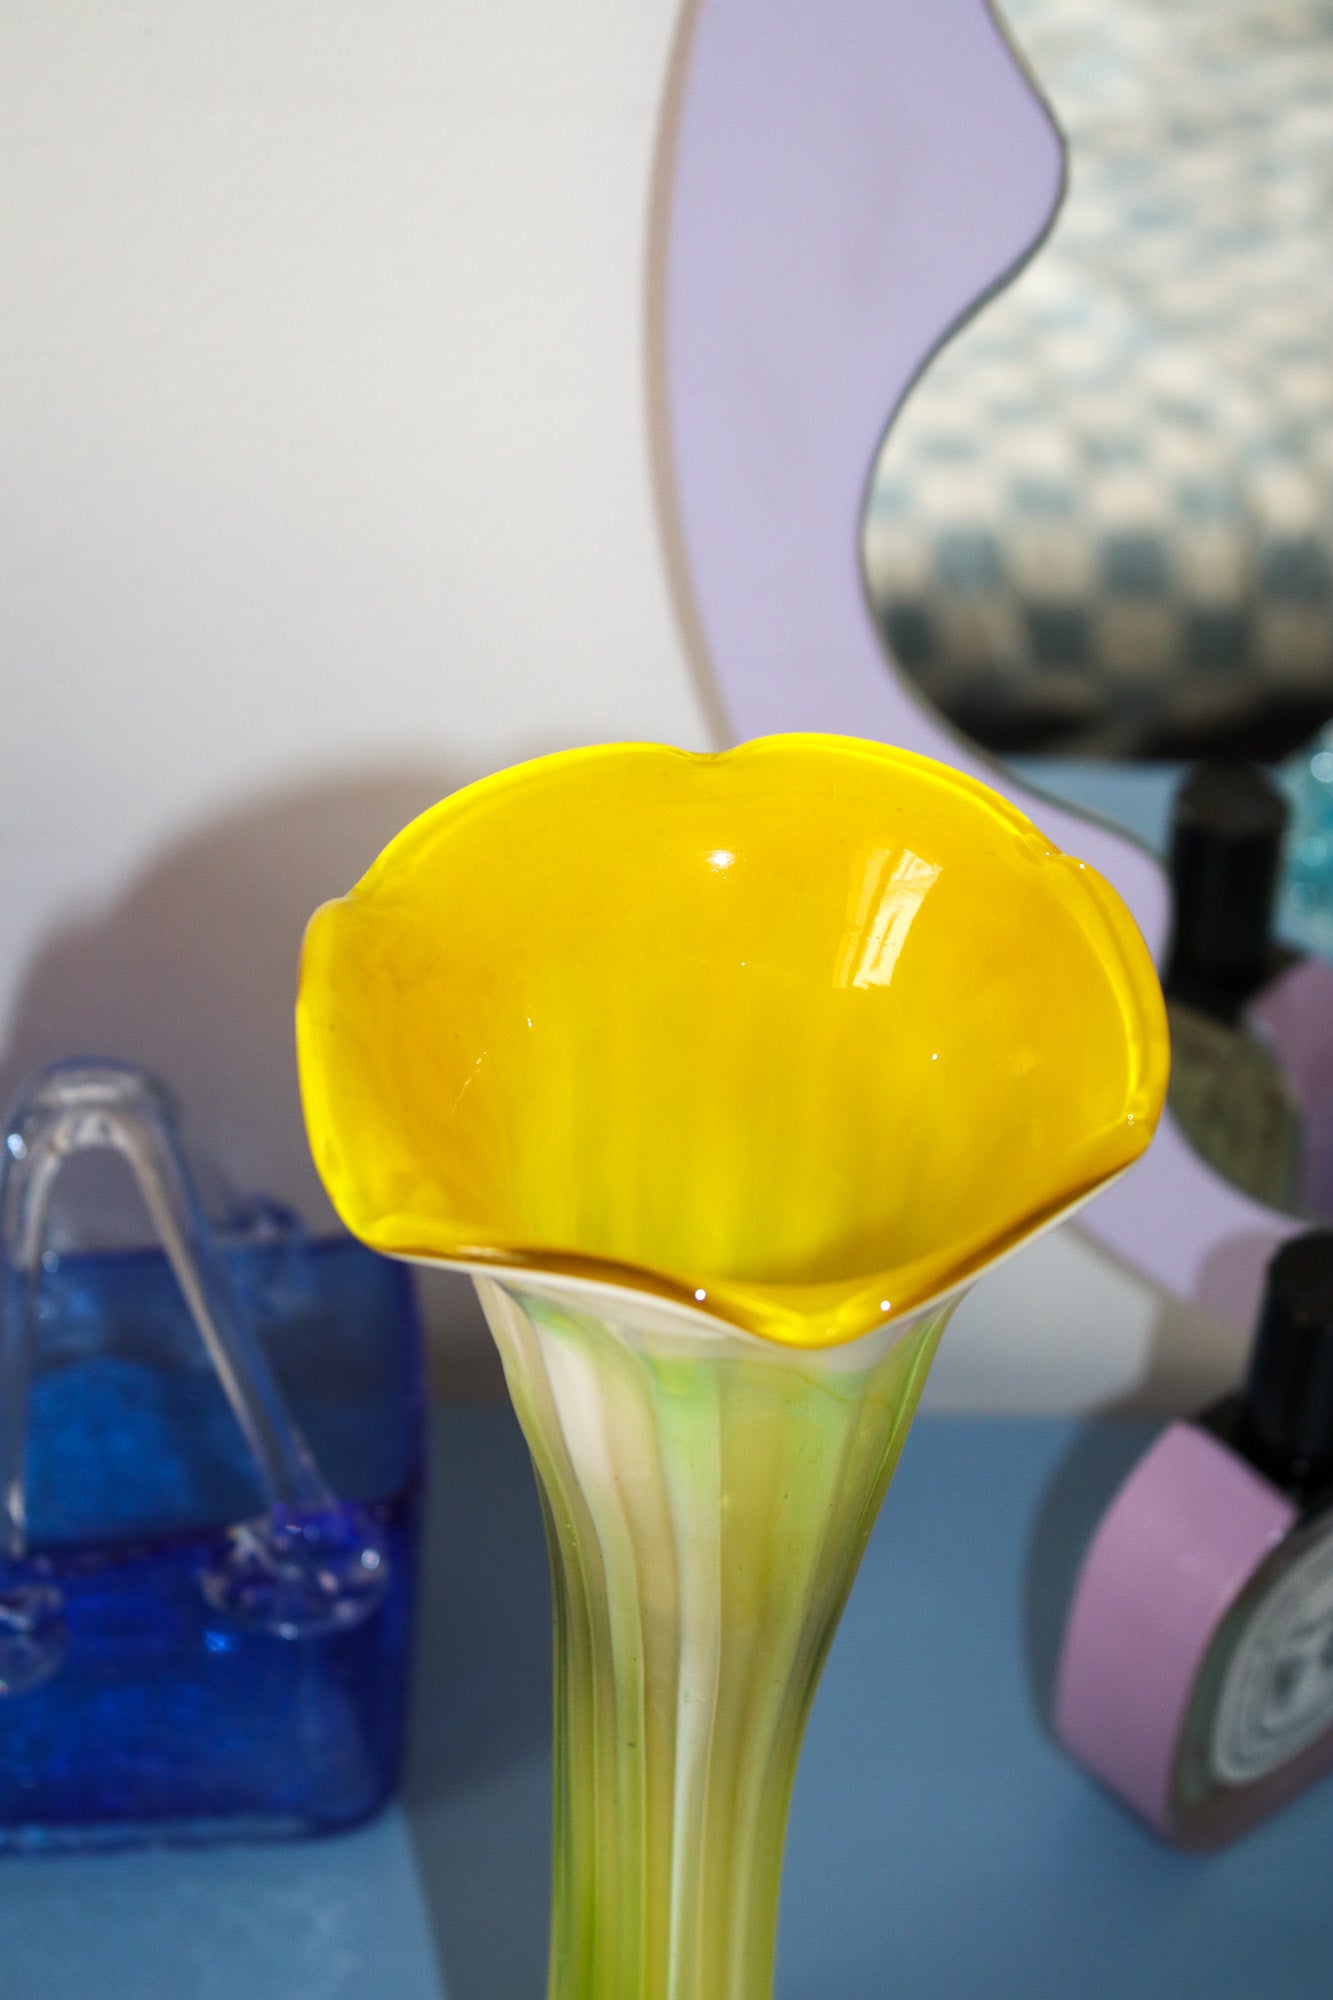 Vase fleur jaune